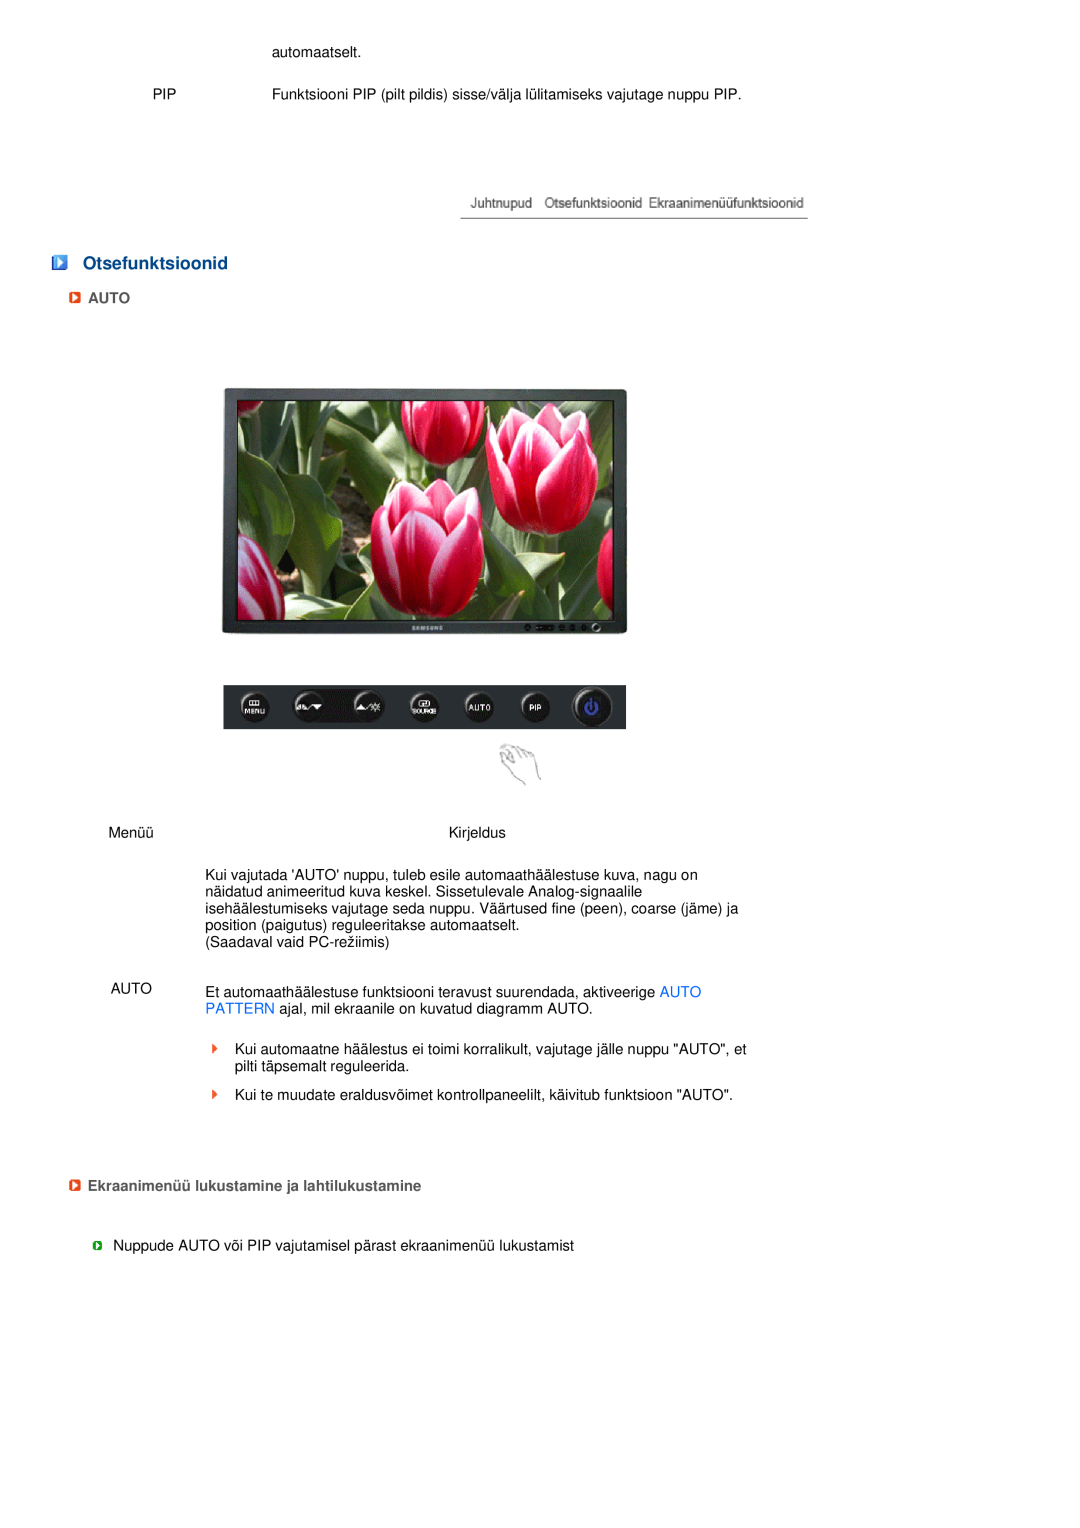 Samsung LS27HUBCB/EDC manual Otsefunktsioonid, Auto, Ekraanimenüü lukustamine ja lahtilukustamine 